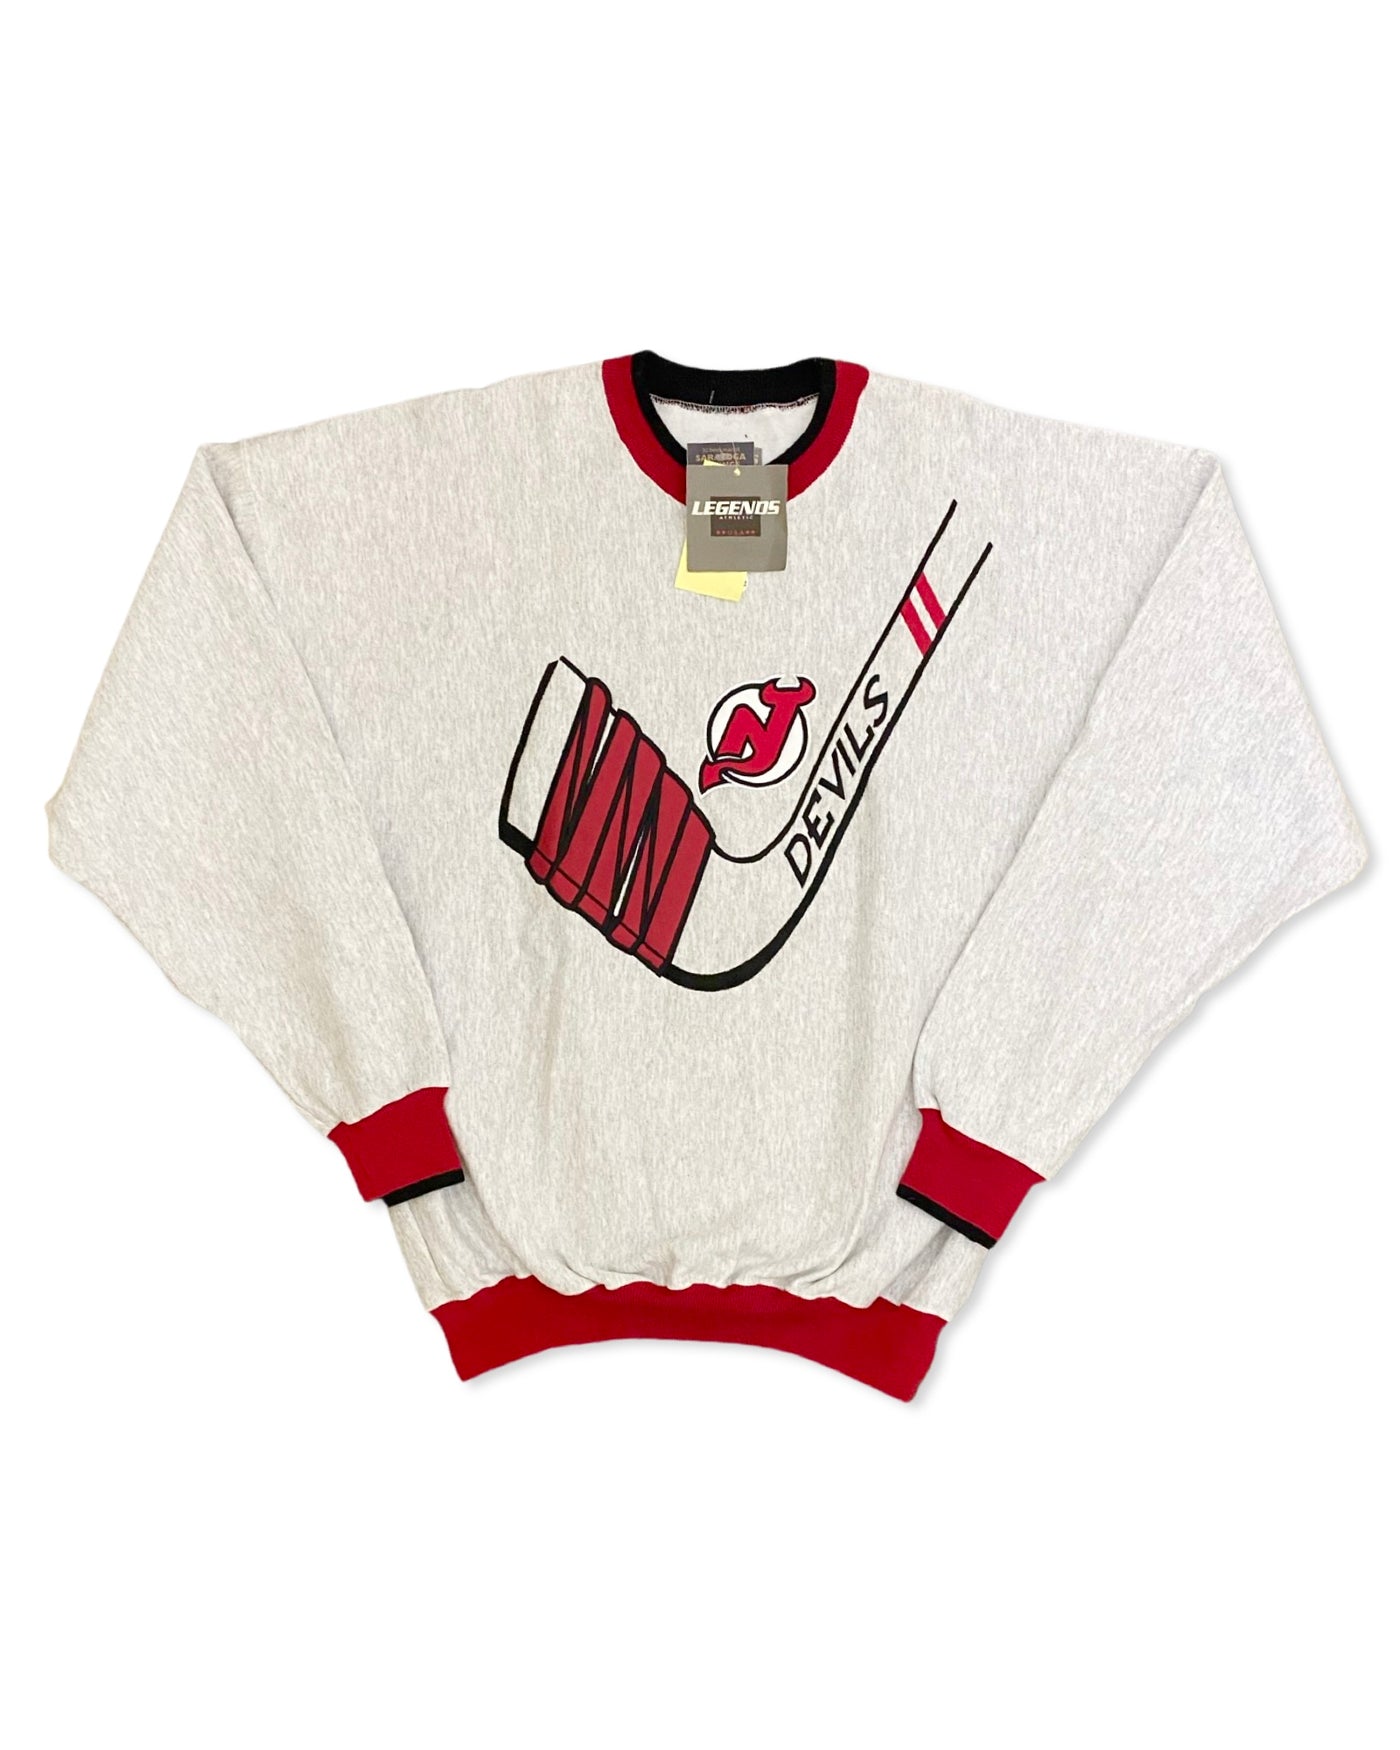 Vintage 90s NJ Devils Embroidered Crewneck